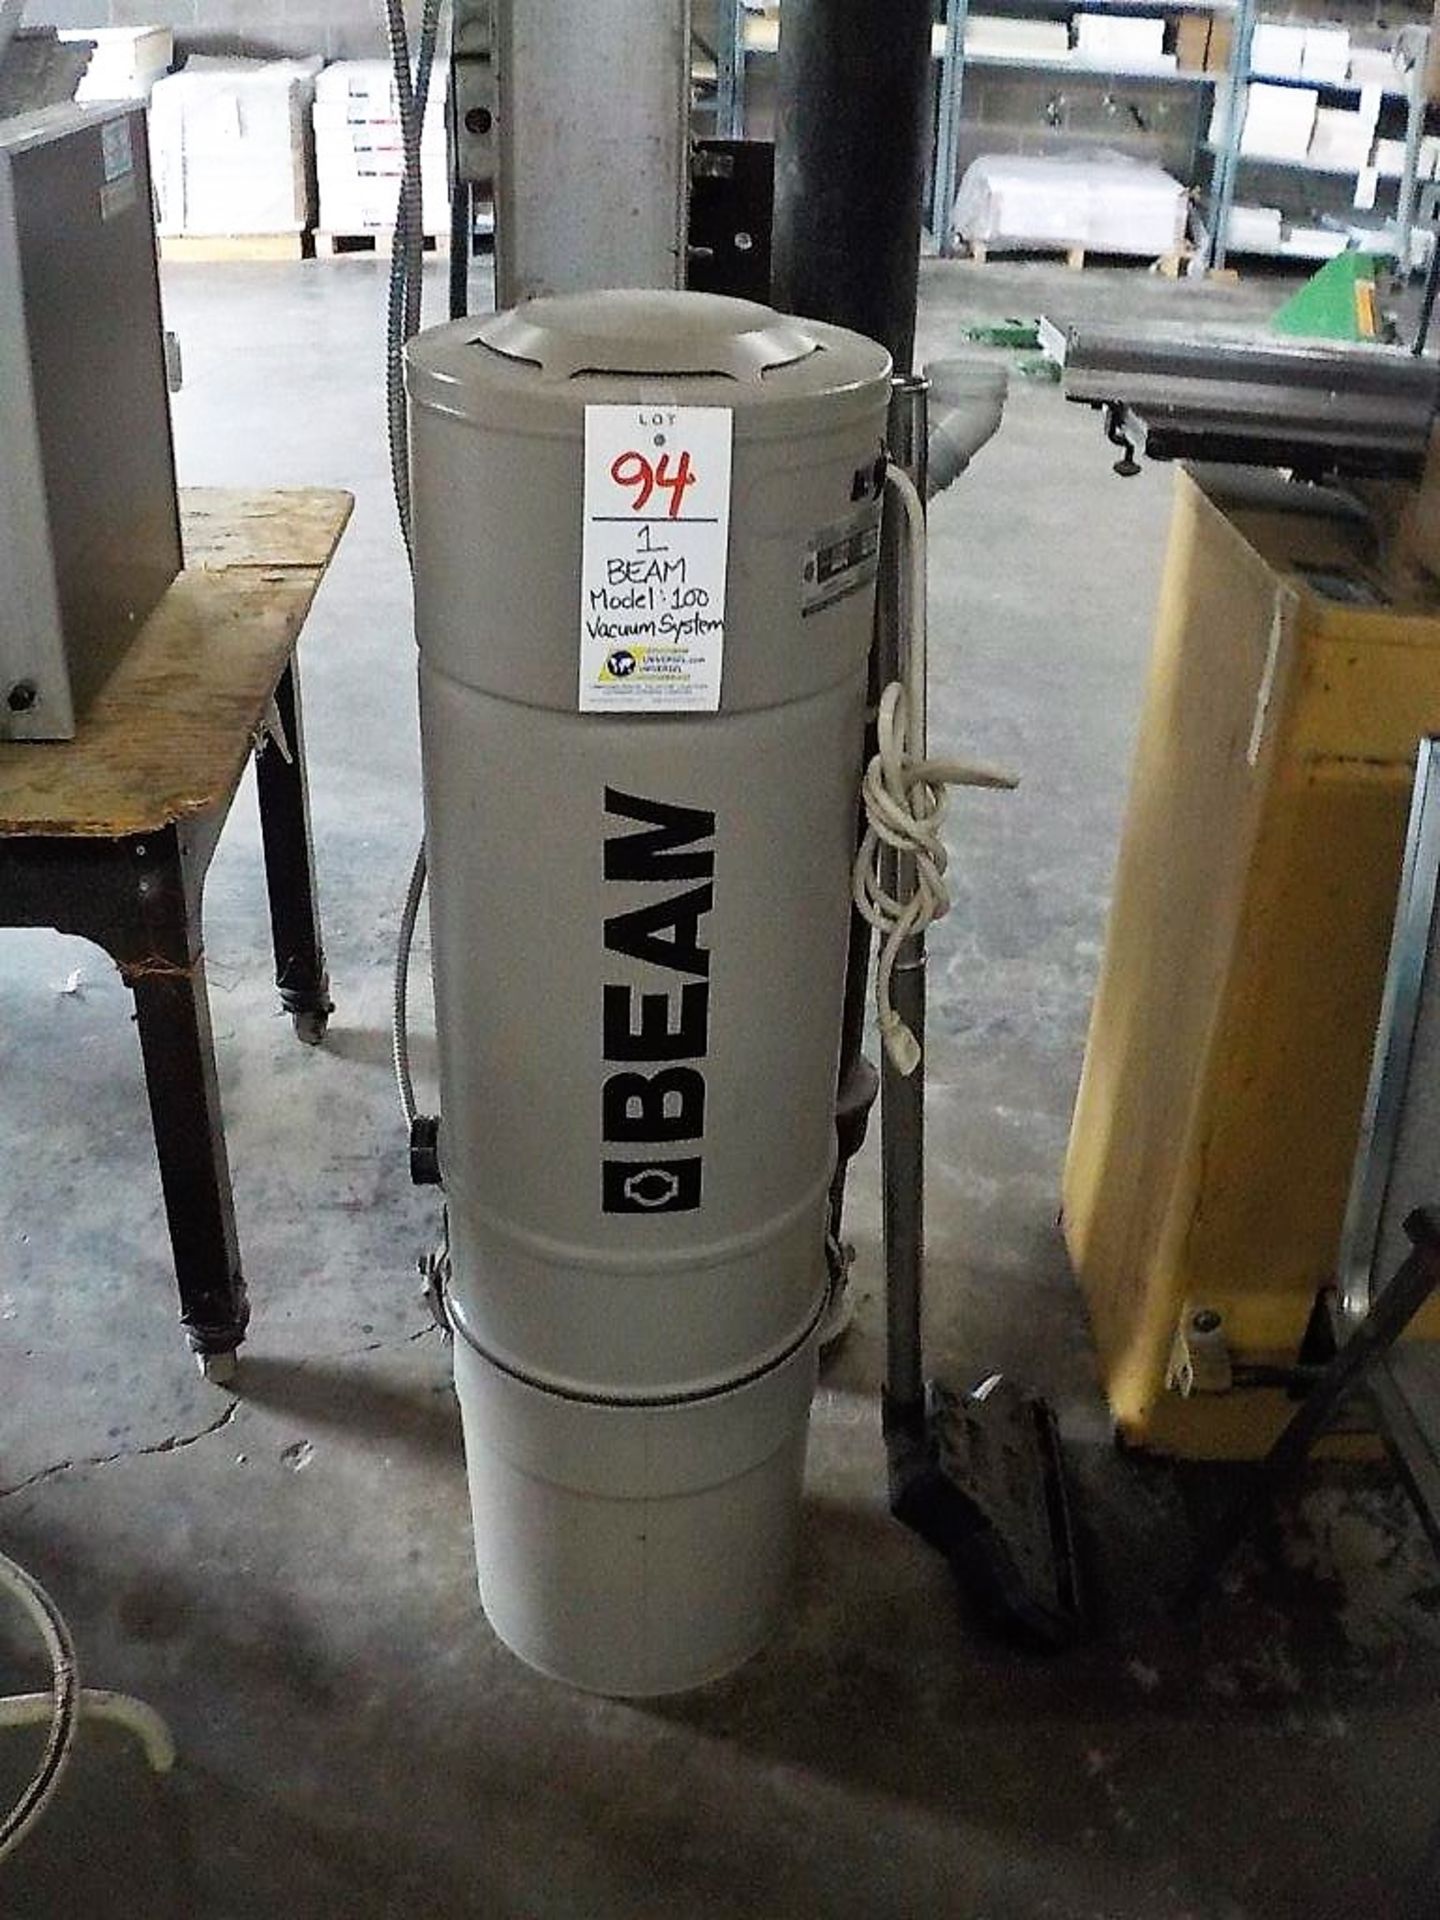 BEAM Model 100 Vacuum System